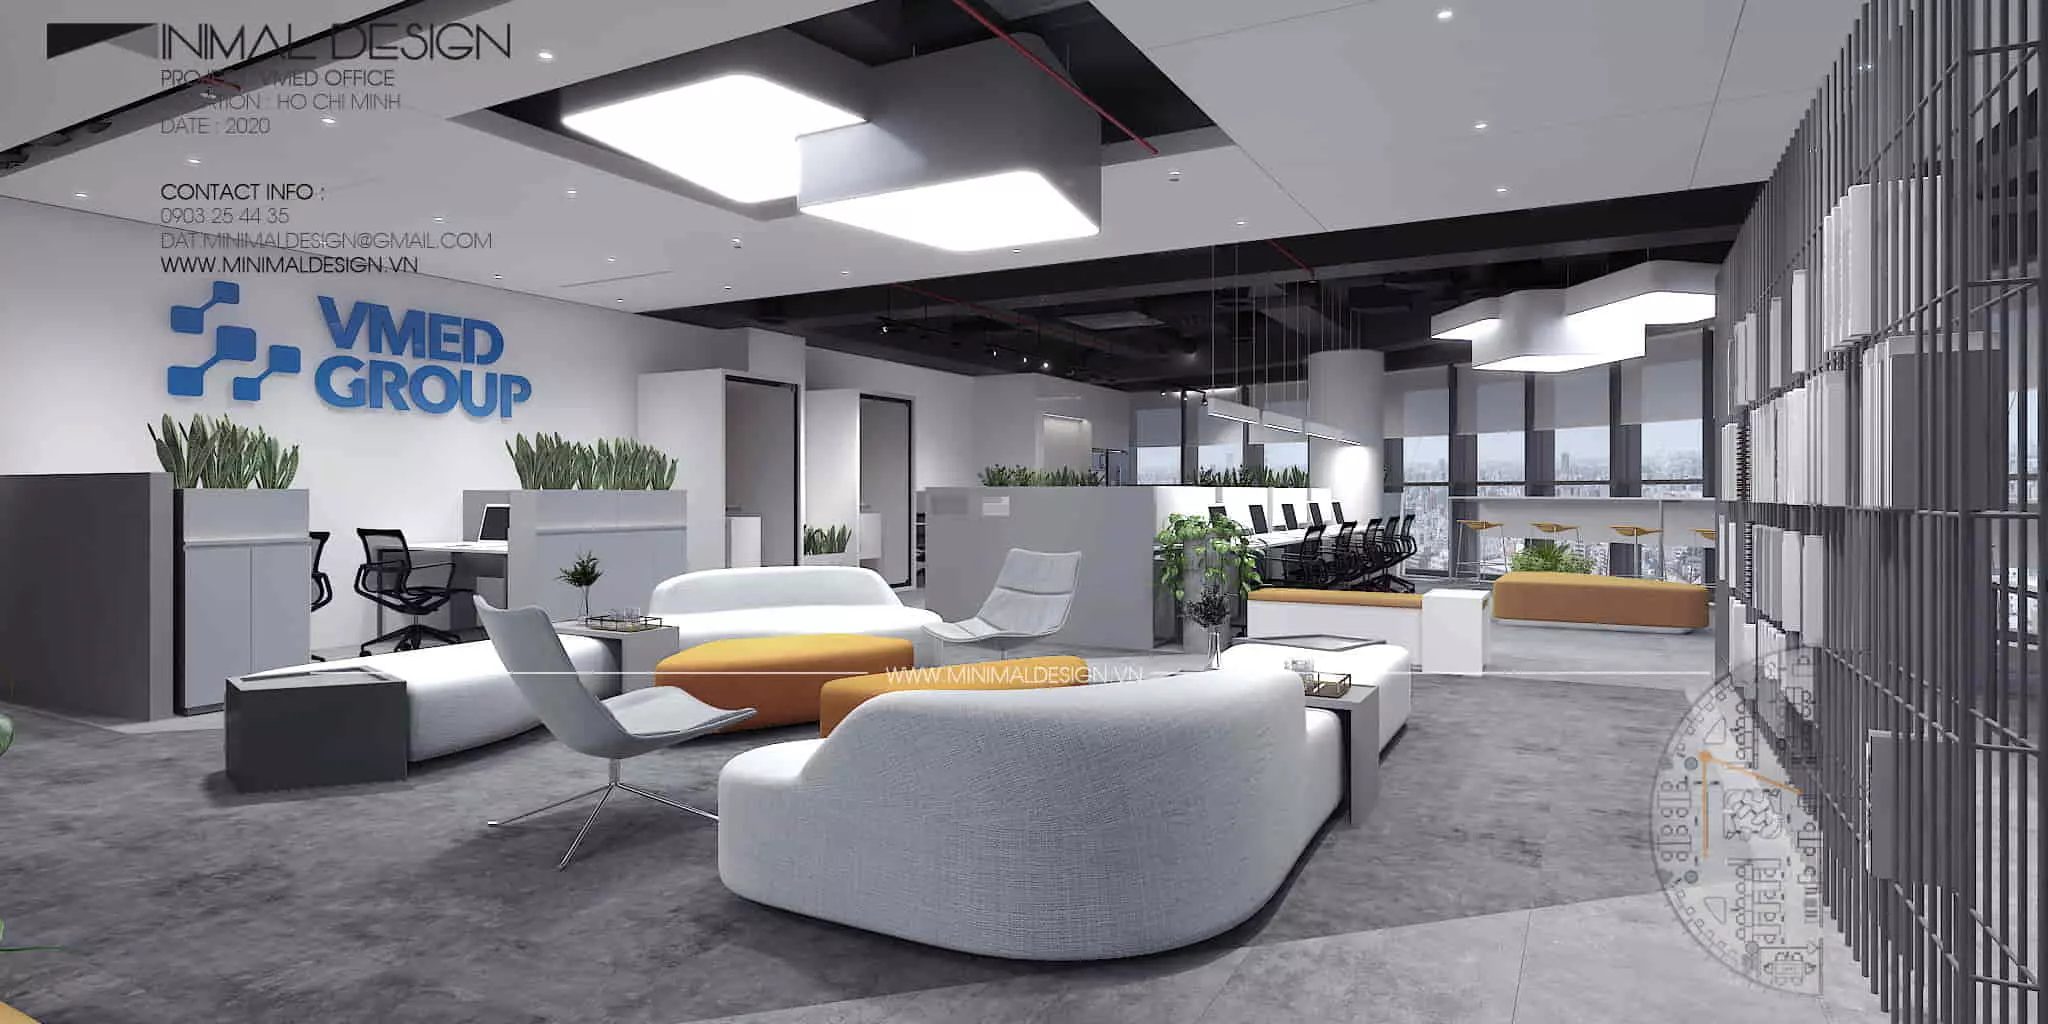 Thiết kế nội thất văn phòng tối giản mang đến một không gian làm việc kiểu mới giúp cân bằng giữa thư giãn và tiện ích, công năng của văn phòng.